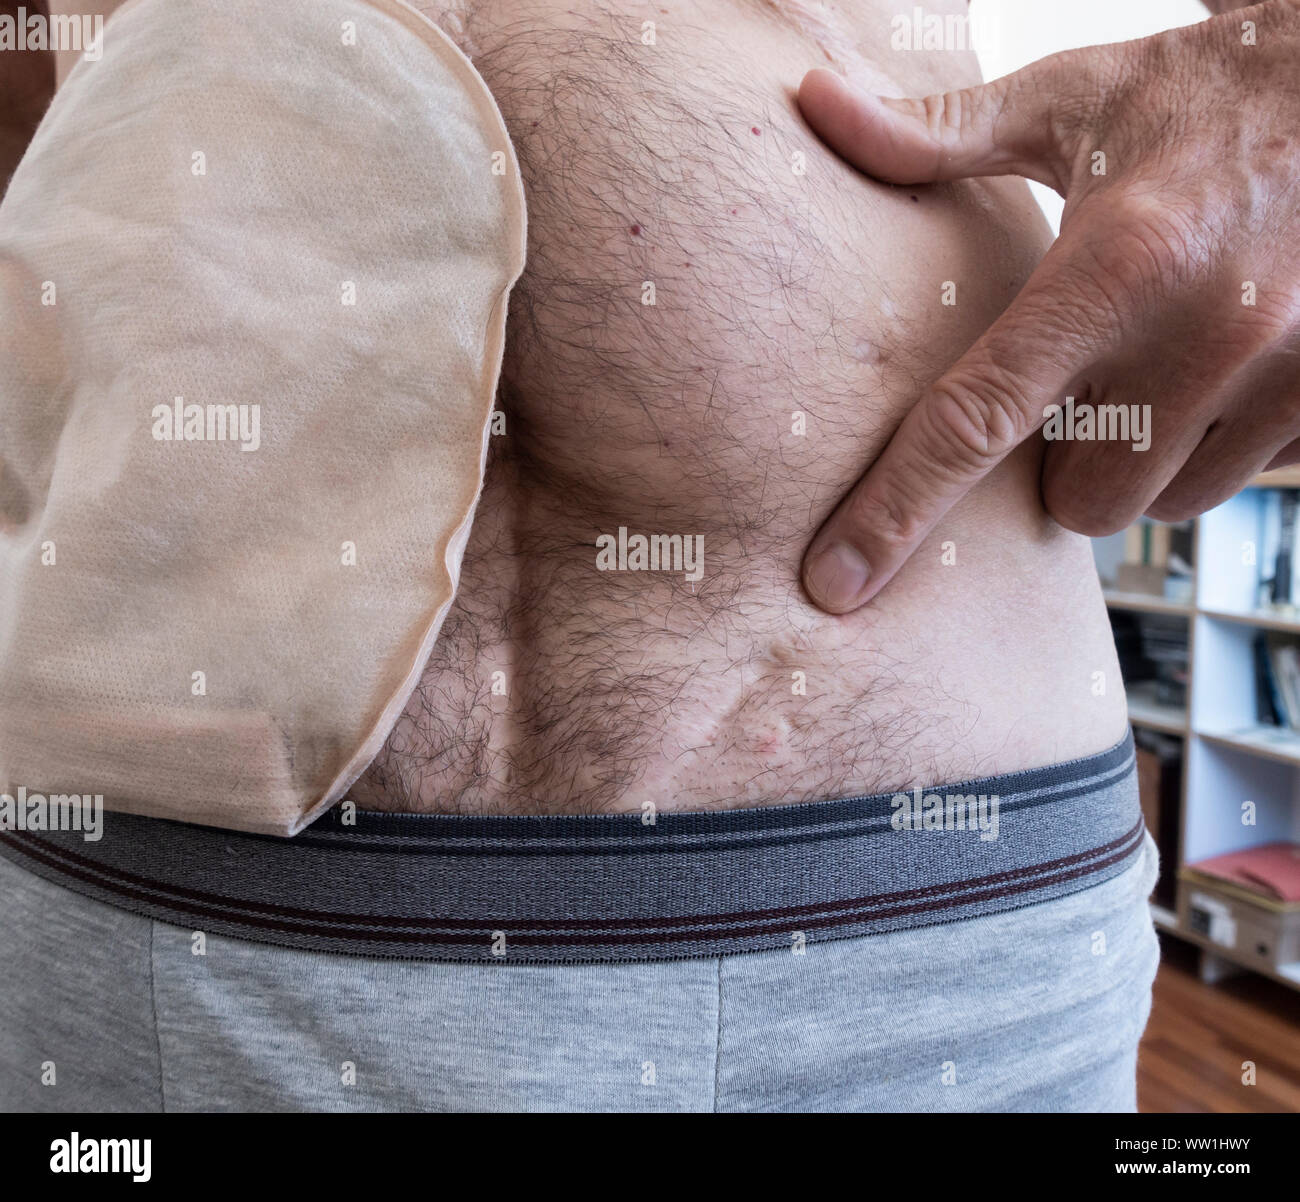 60 ans homme portant des points de sac d'iléostomie cicatrice sur la partie inférieure gauche de l'abdomen, le résultat d'une opération pour enlever un testicule (orchidectomie) en 1979 Banque D'Images